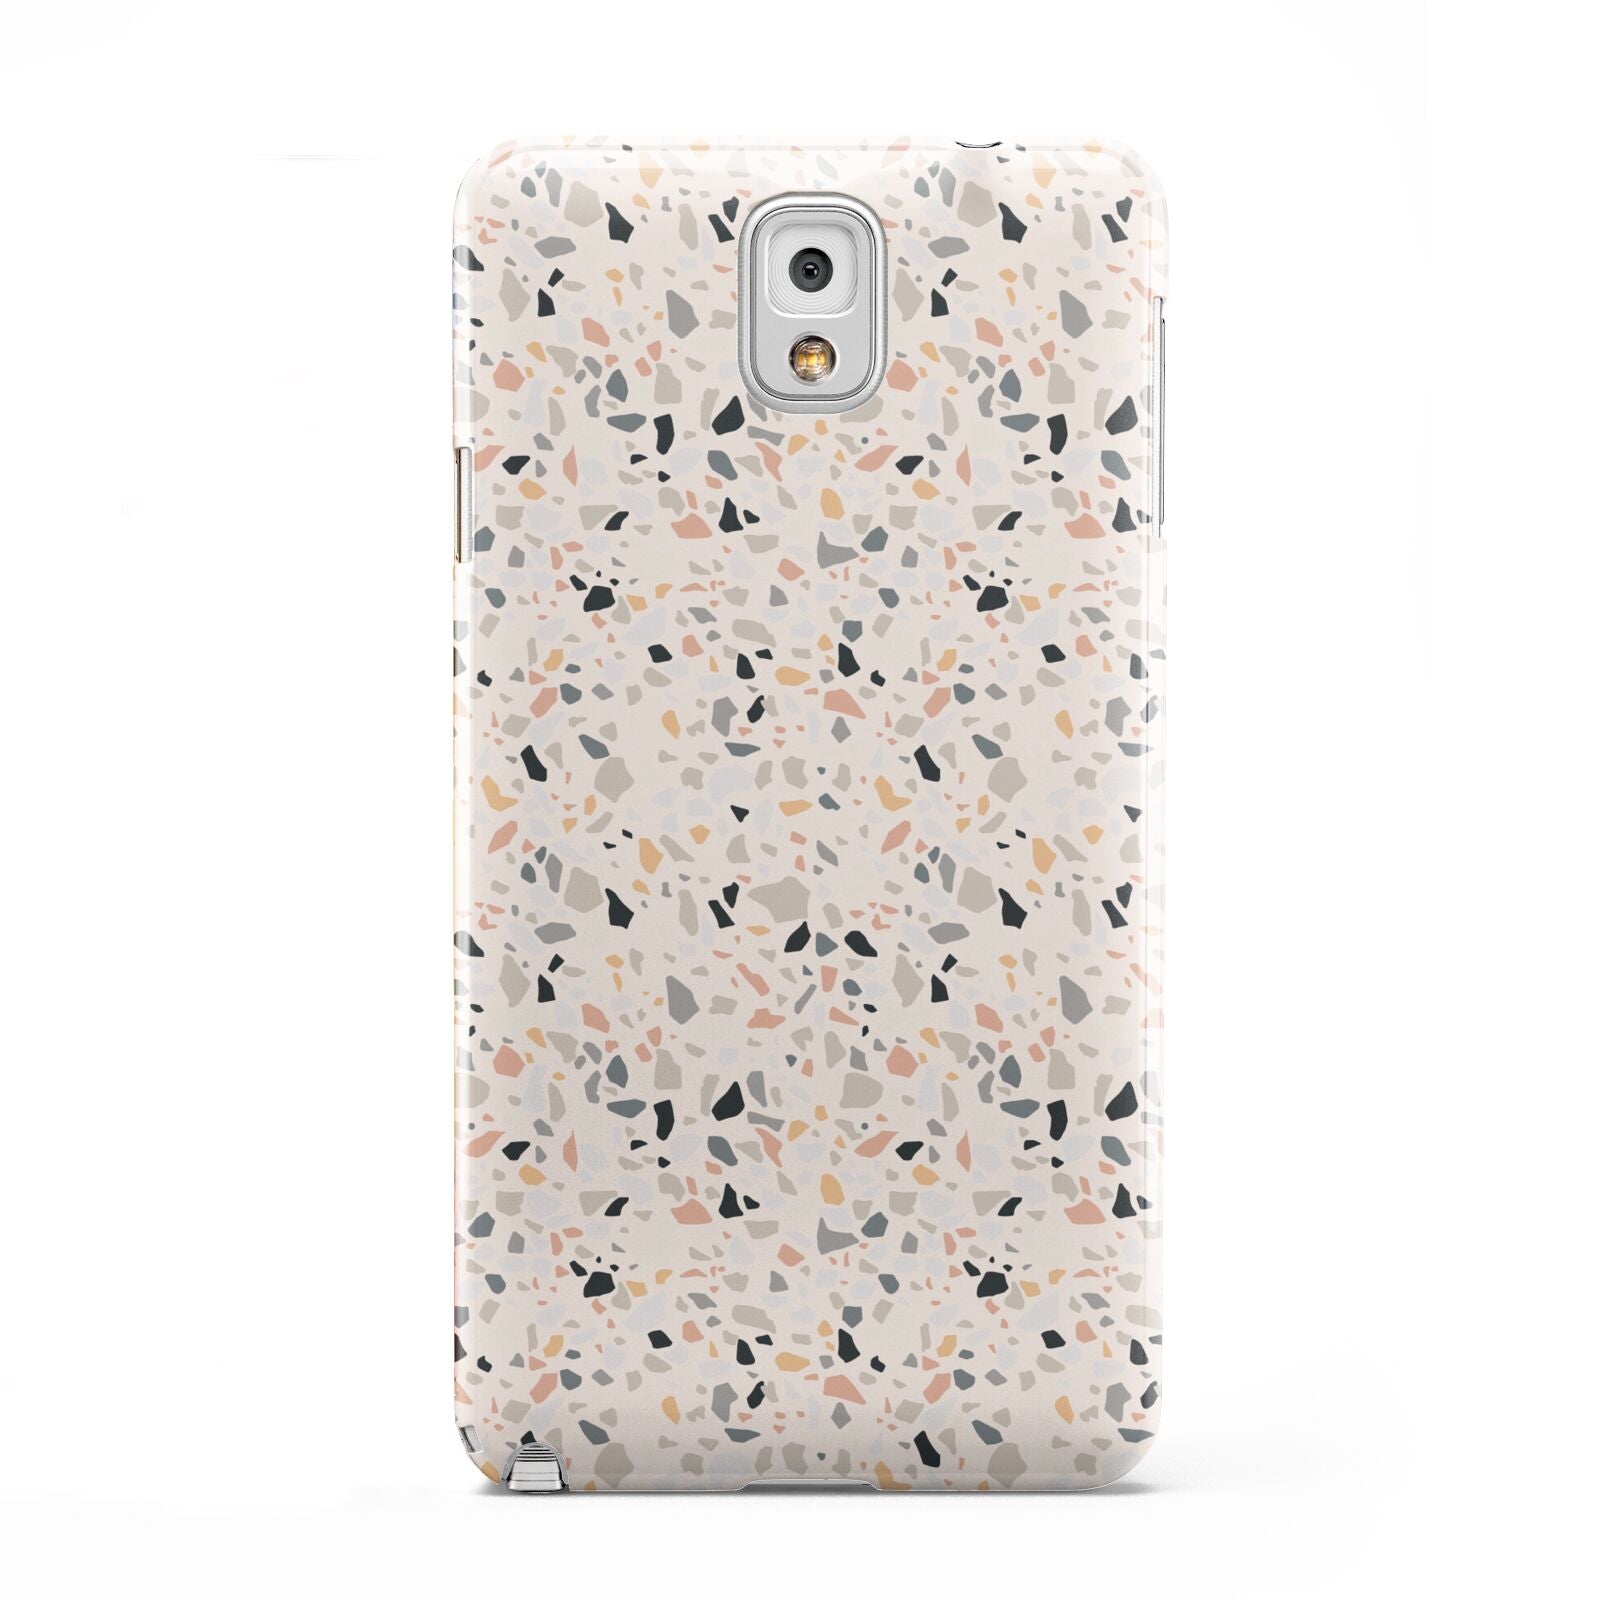 Terrazzo Stone Samsung Galaxy Note 3 Case